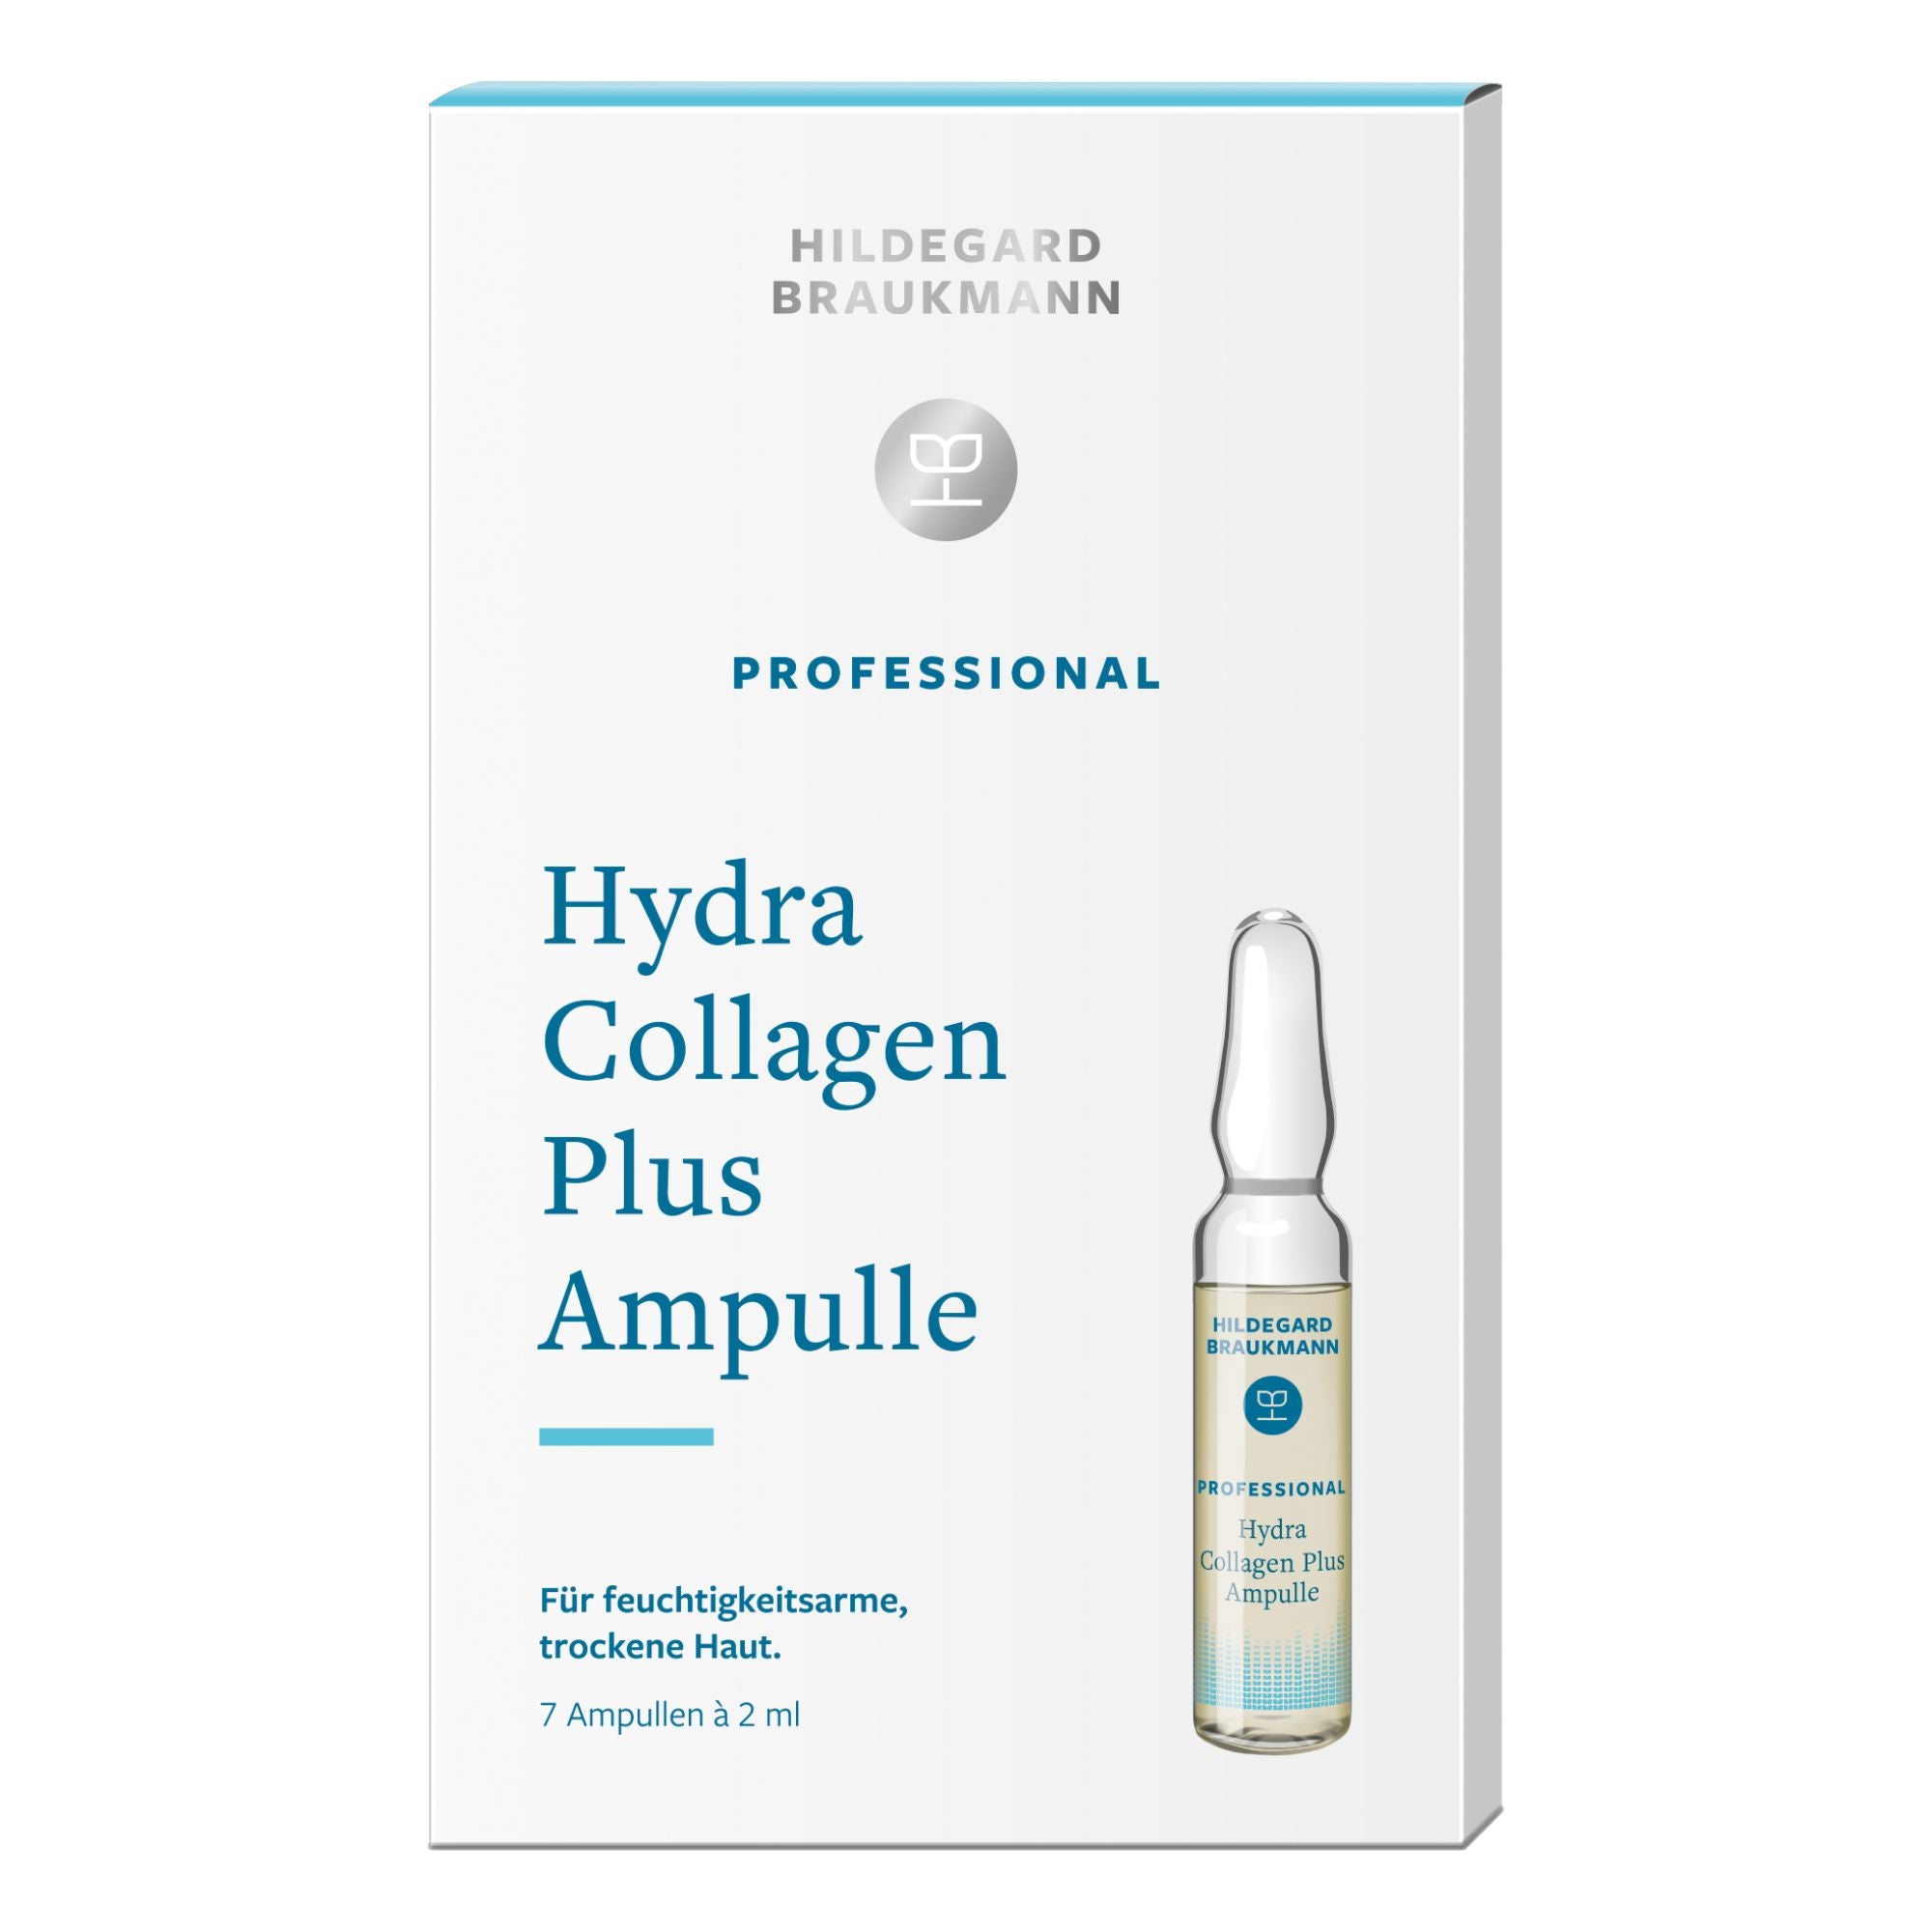 Hildegard Braukmann Professional Hydra Collagen Plus Ampulle (7 x 2ml)